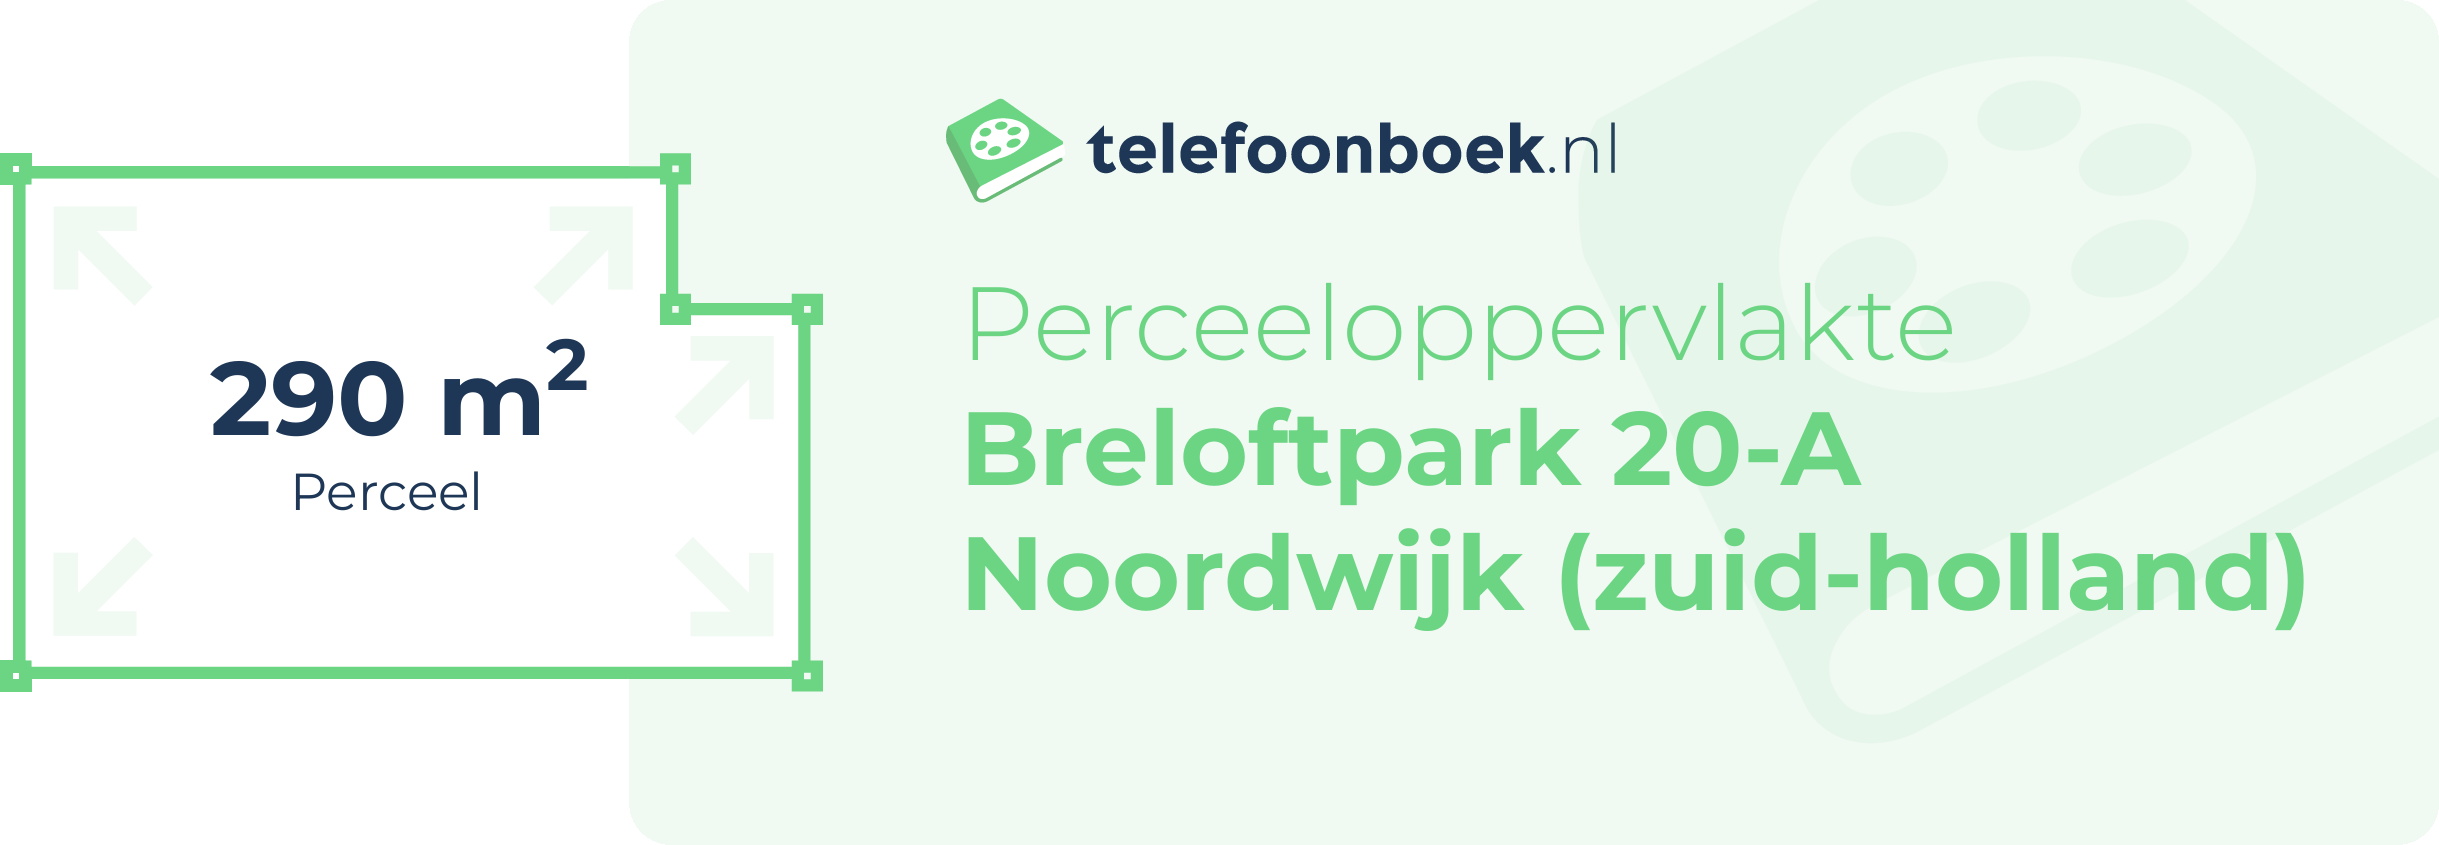 Perceeloppervlakte Breloftpark 20-A Noordwijk (Zuid-Holland)